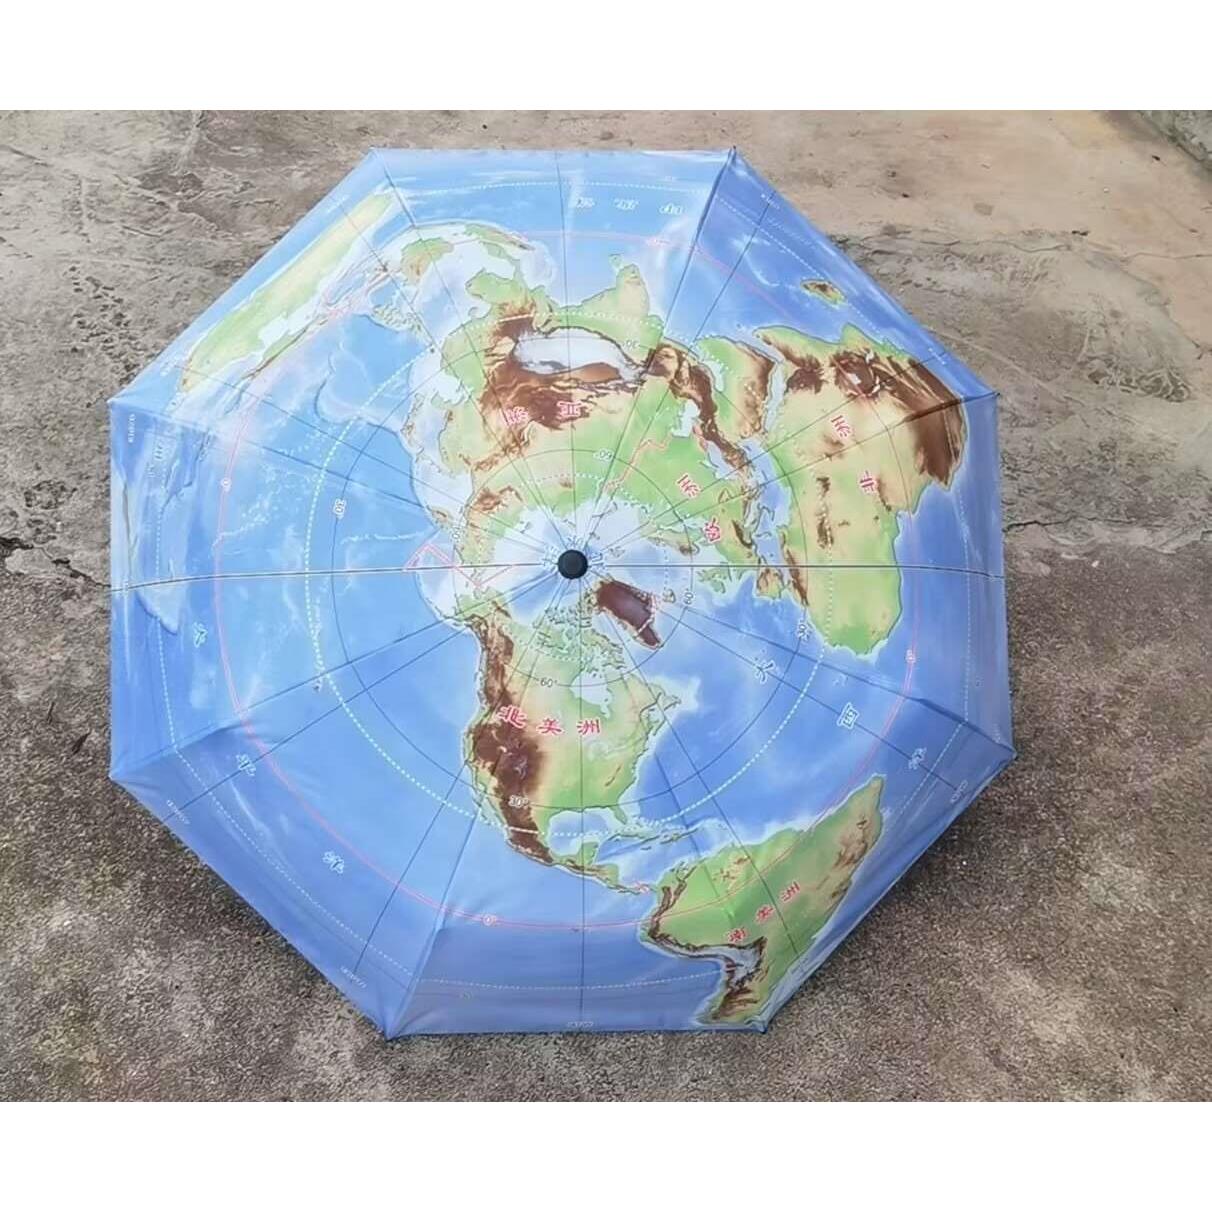 新款地图伞三折叠晴雨伞展示别致北极为中心50°S以北海陆双十